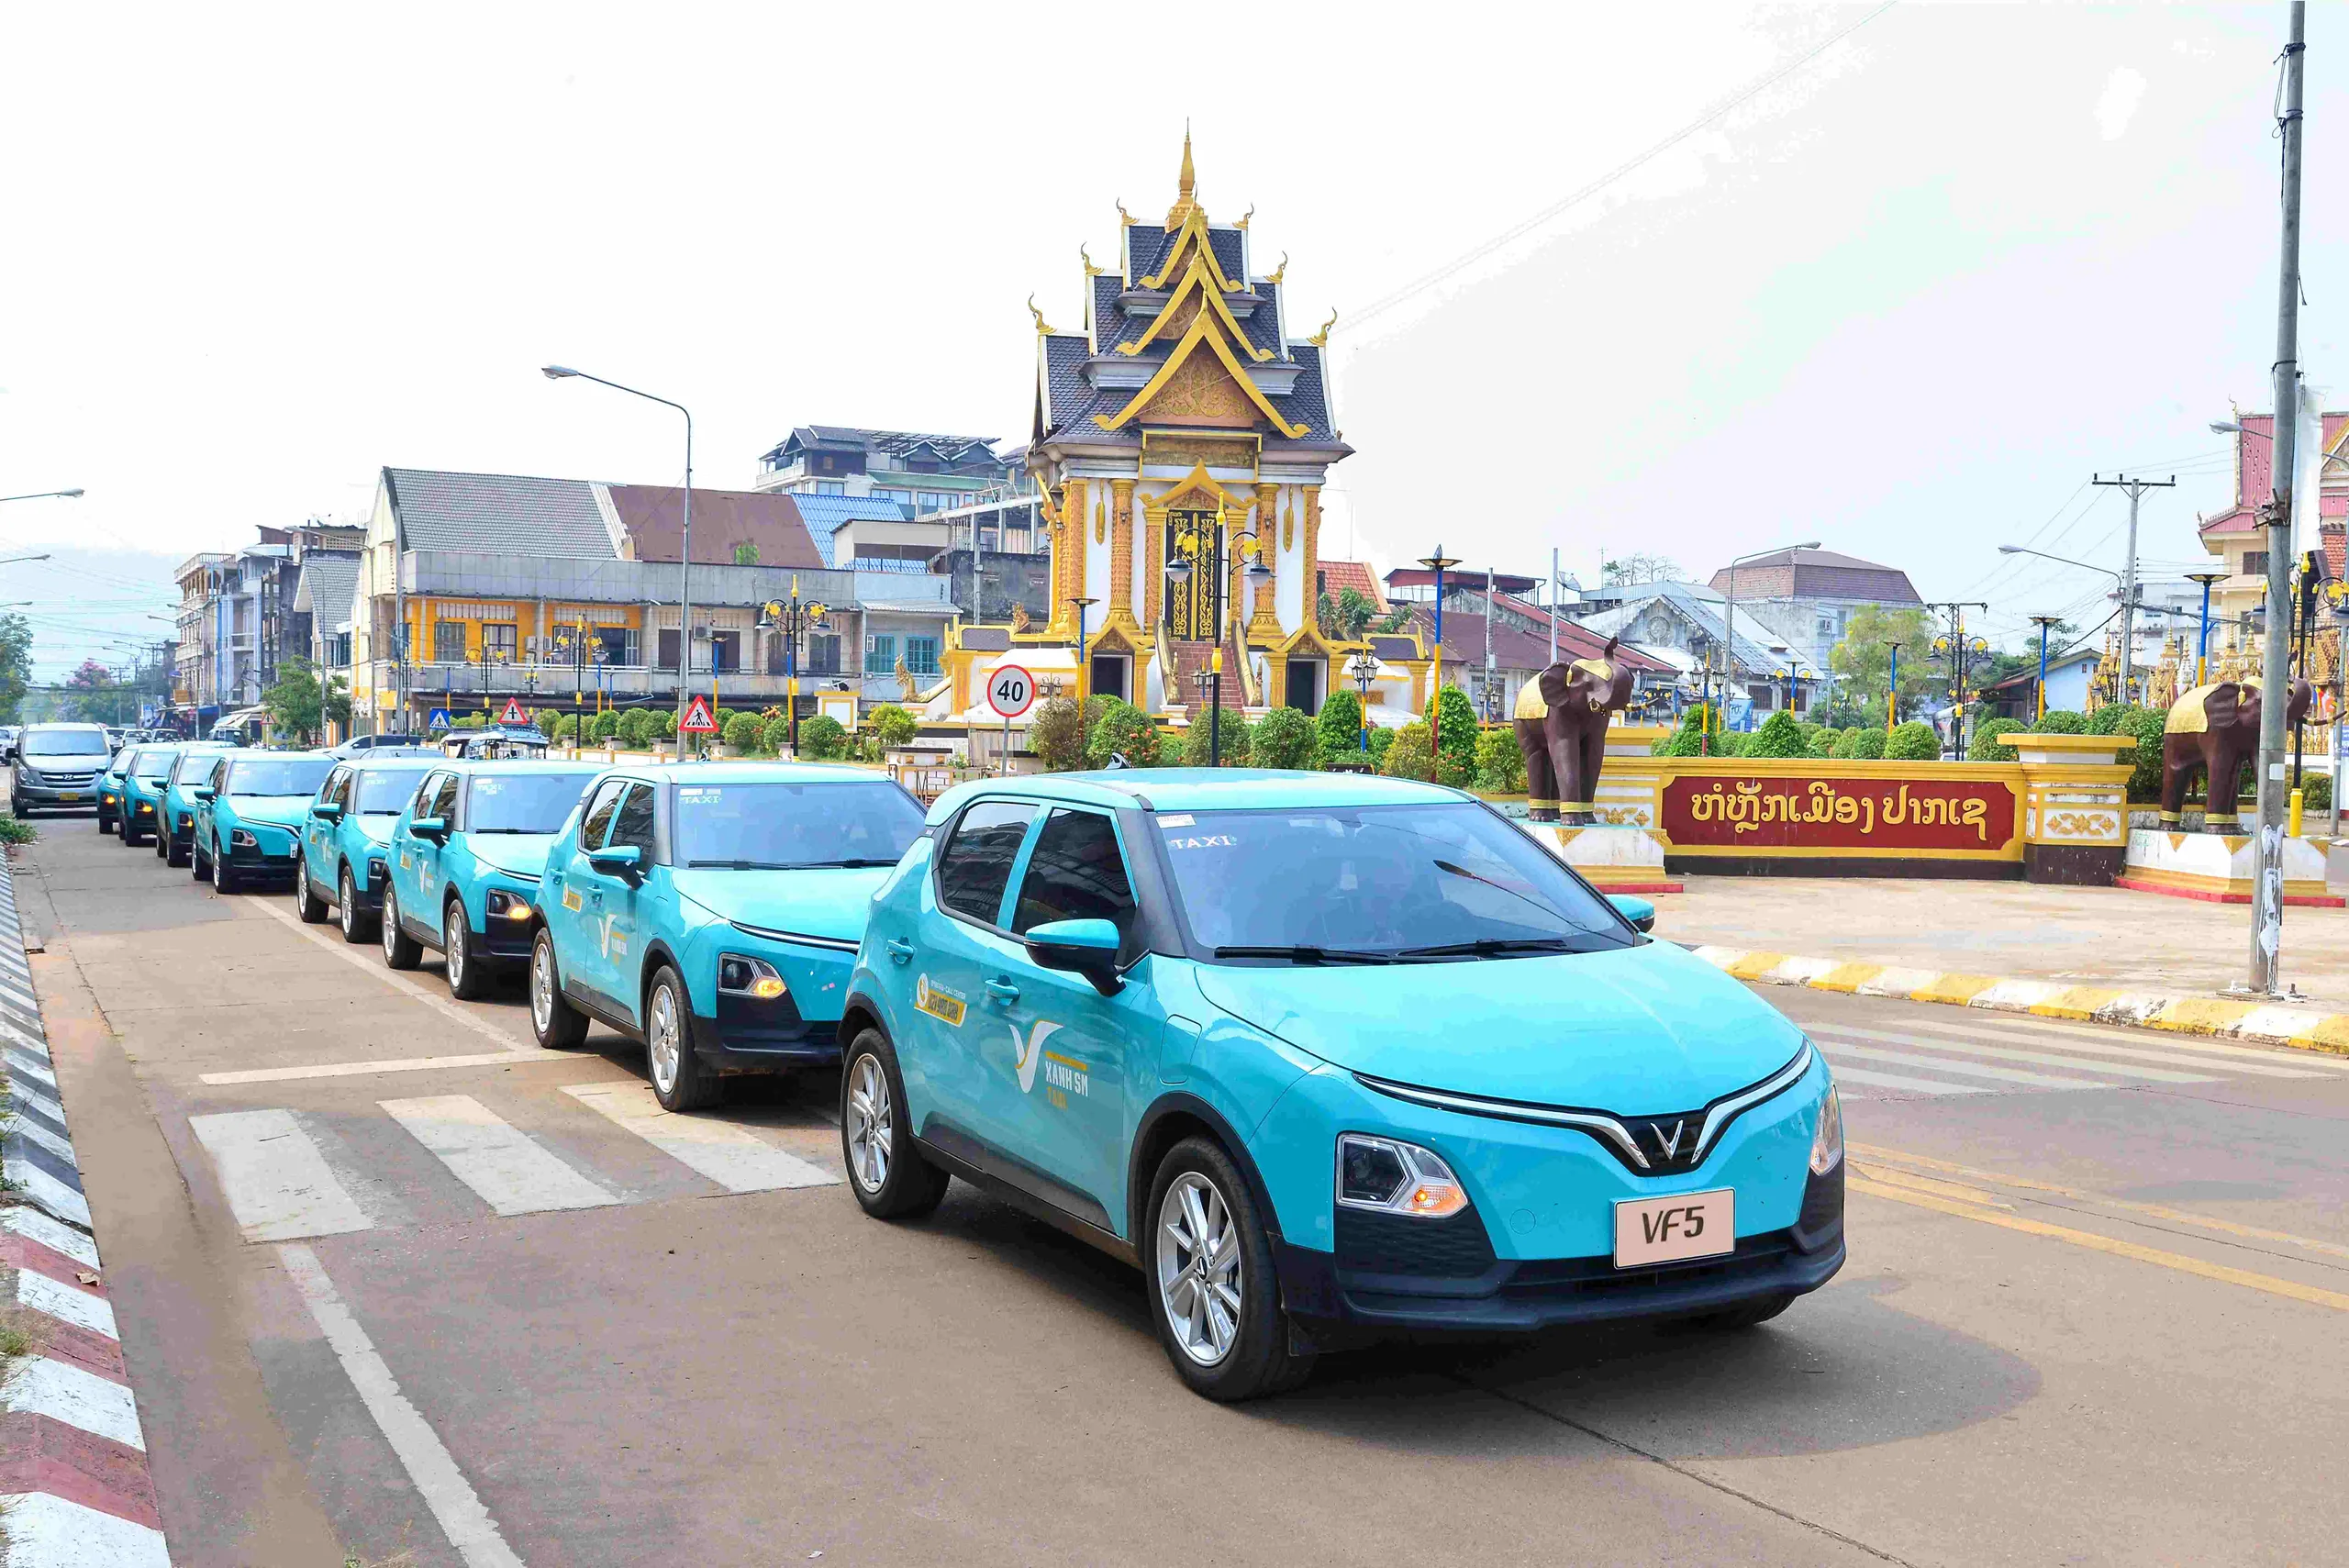 Xanh SM Lào mở rộng hoạt động tới tỉnh Champasak, mang đến giải pháp di chuyển xanh và tiện lợi